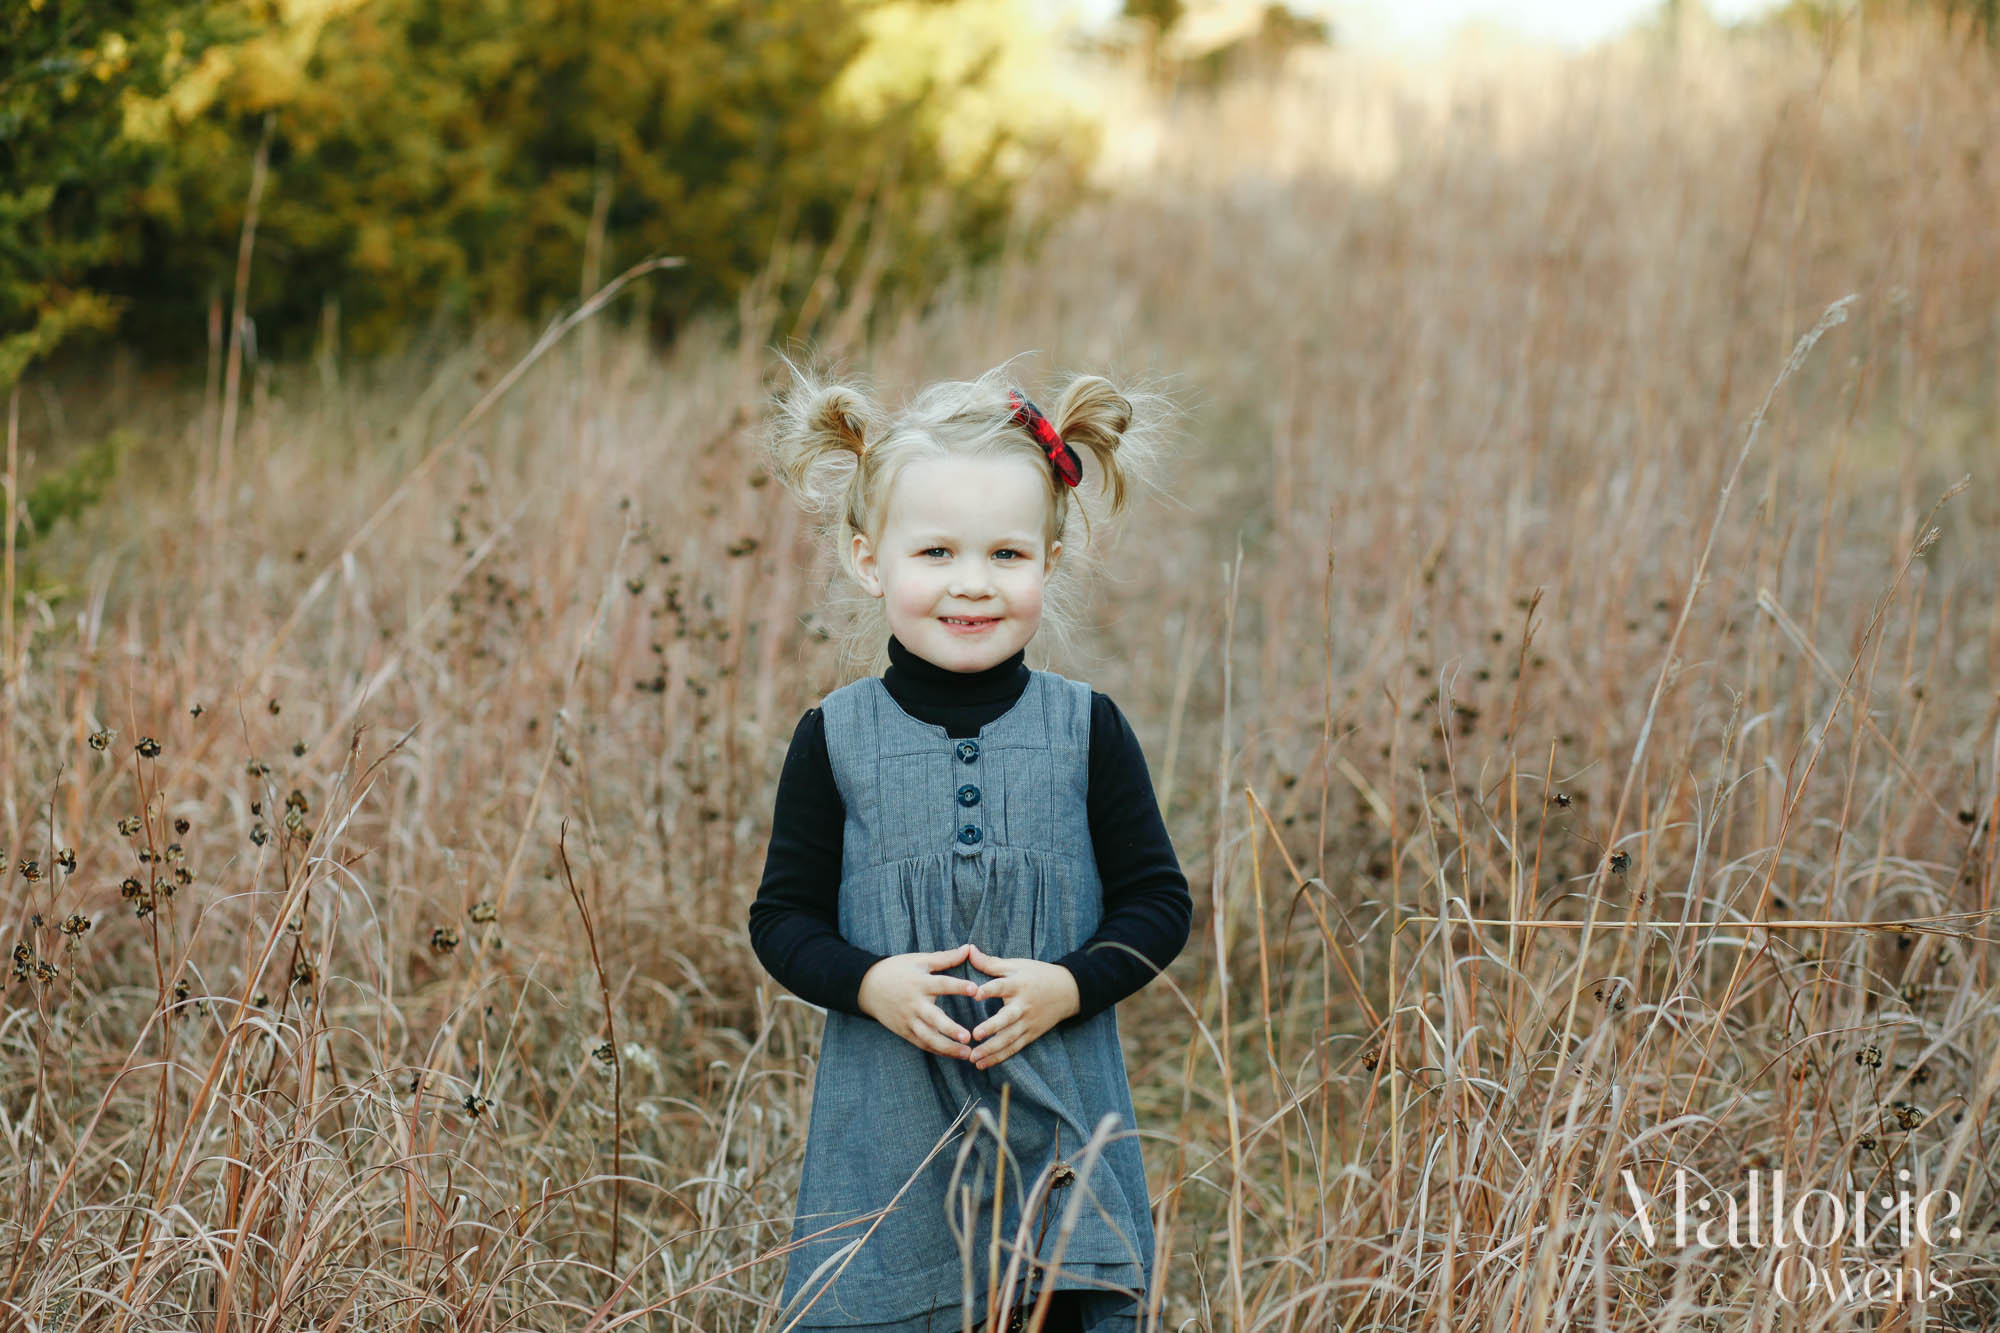 Child Portrait Photography | MALLORIE OWENS